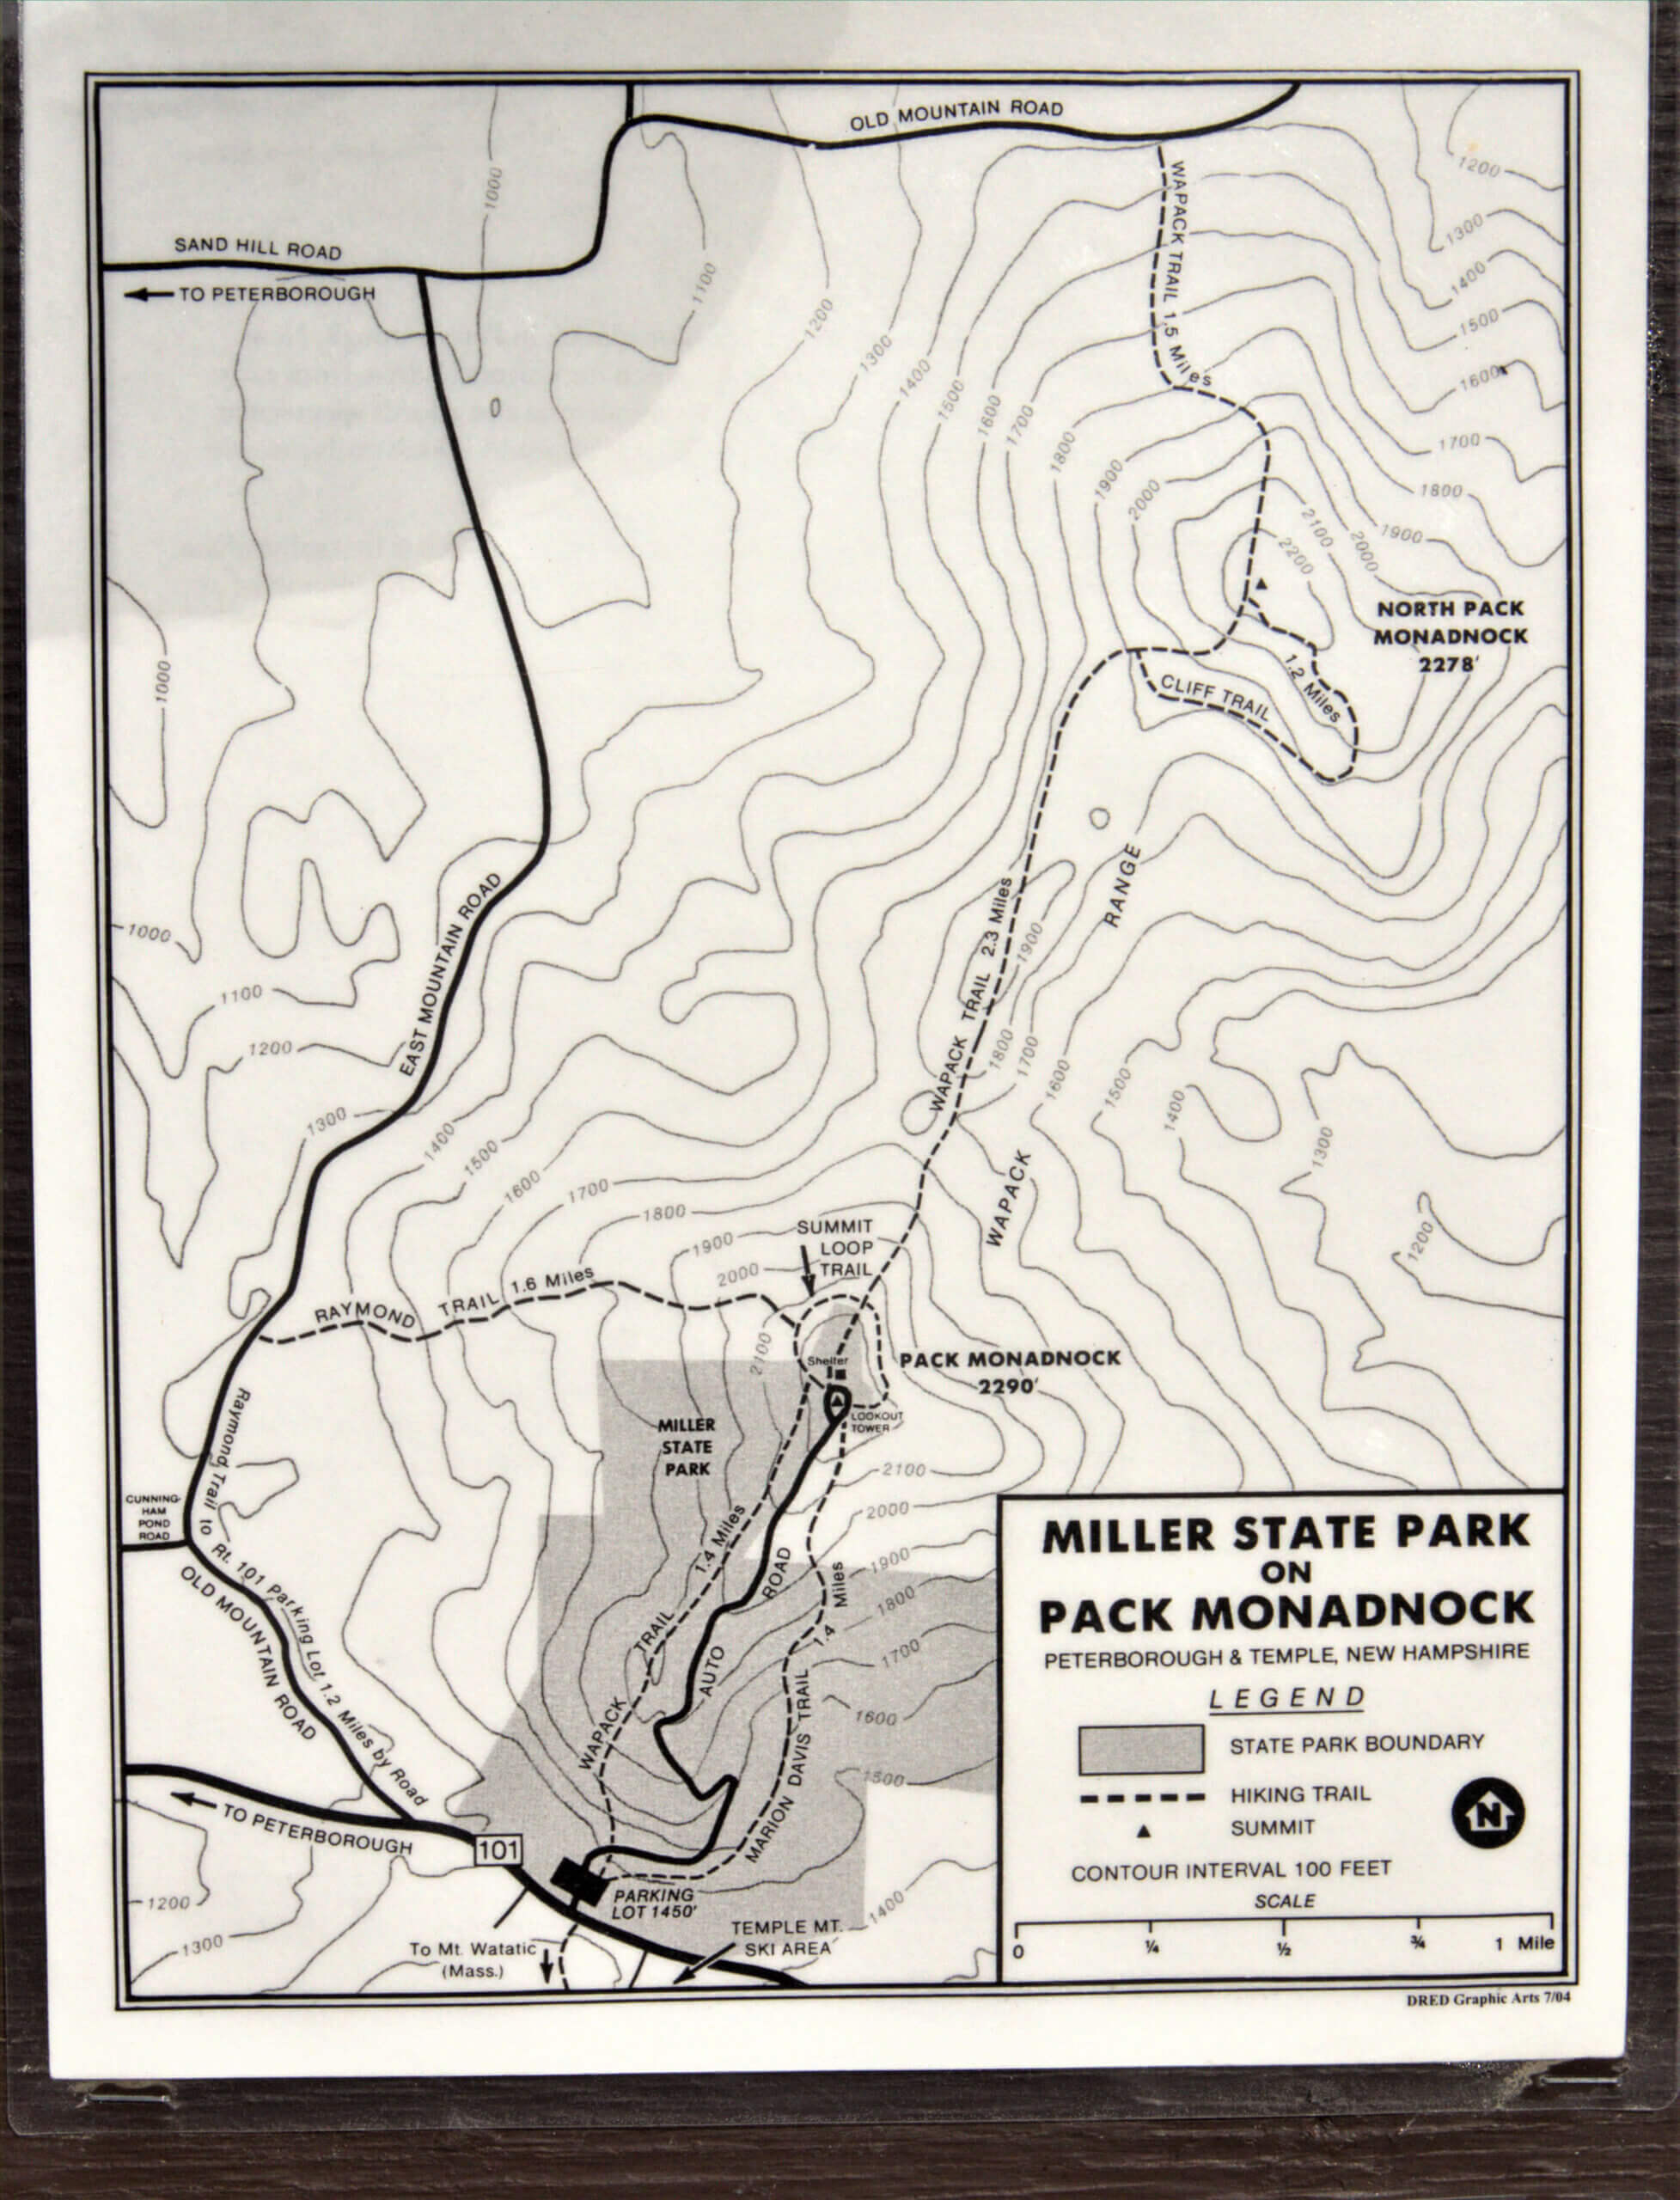 Miller State Park / Pack Monadnock